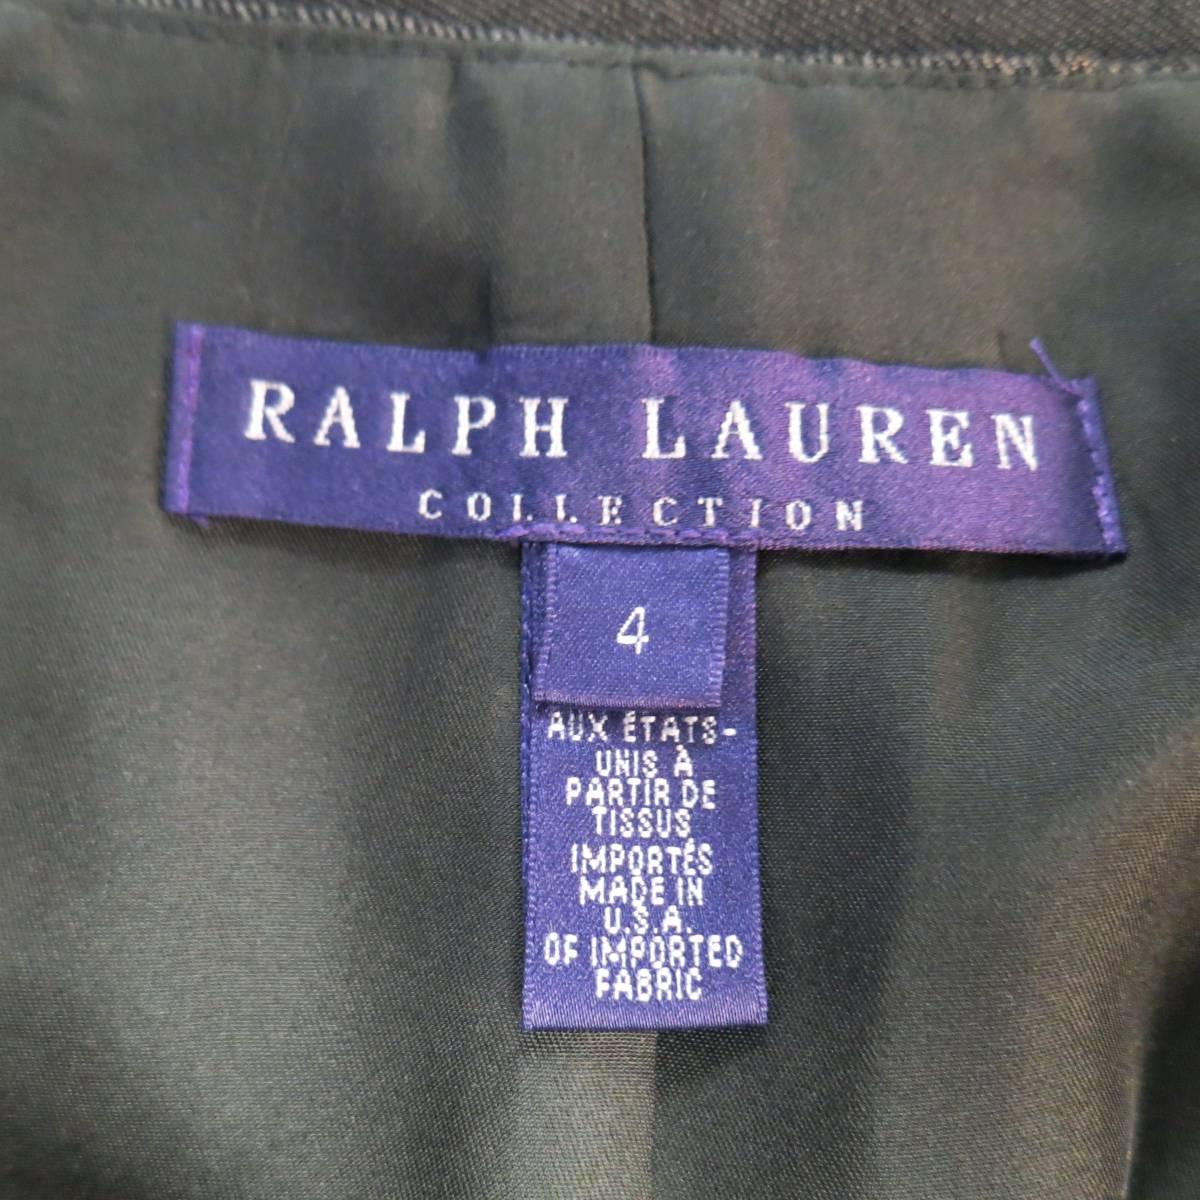 RALPH LAUREN COLLECTION Pencil Skirt Size 4 Metallic Grey Wool Blend 1